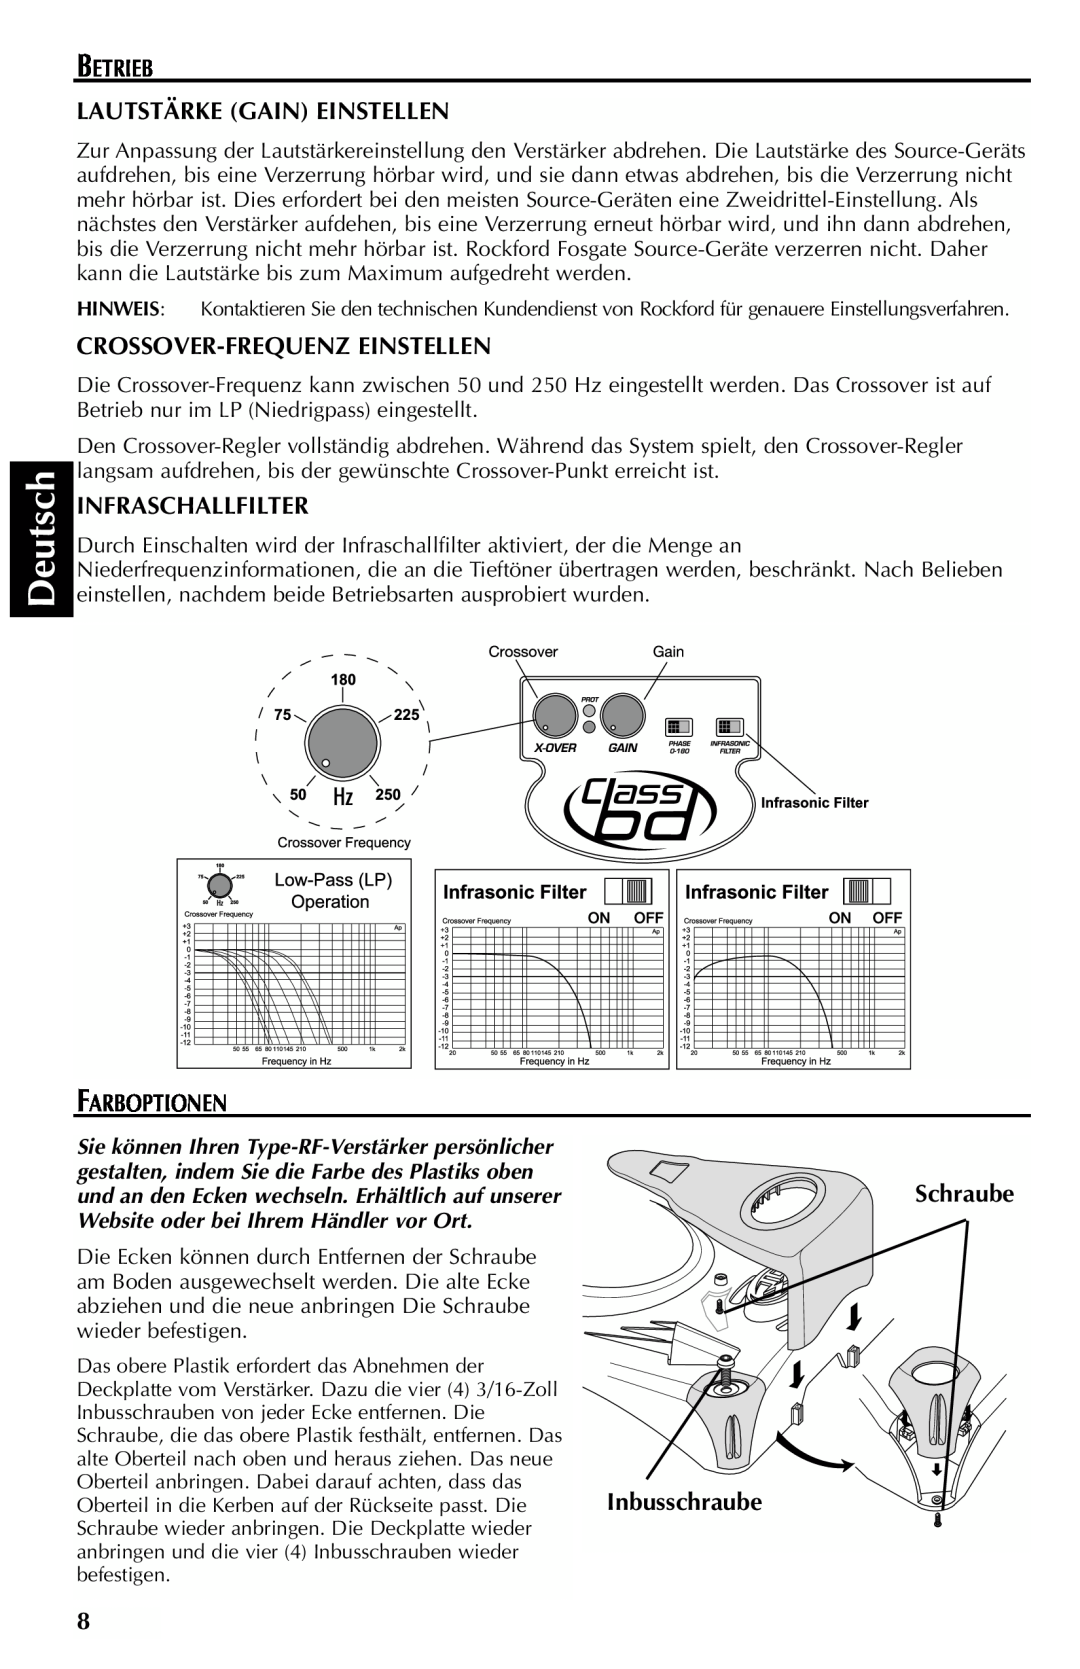 Rockford Fosgate FFX6 manual Deutsch, Betrieb Lautstärke Gain Einstellen, Crossover-Frequenzeinstellen, Infraschallfilter 